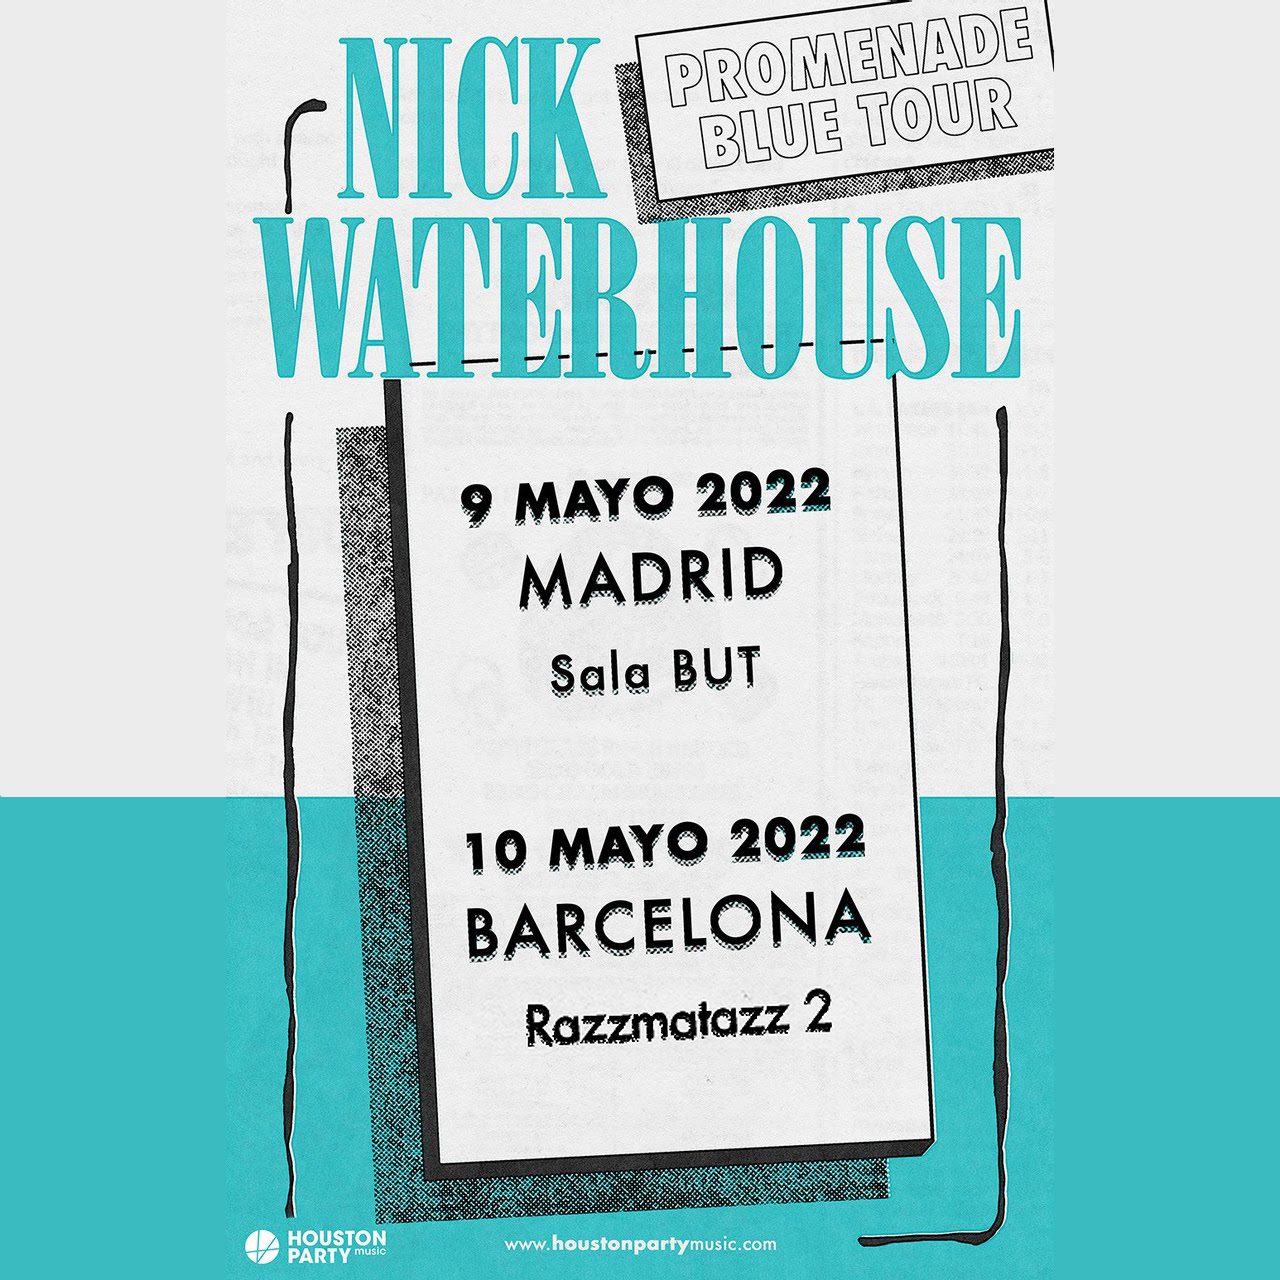 NICK WATERHOUSE cambia su concierto madrileño del 9 de mayo a la sala But